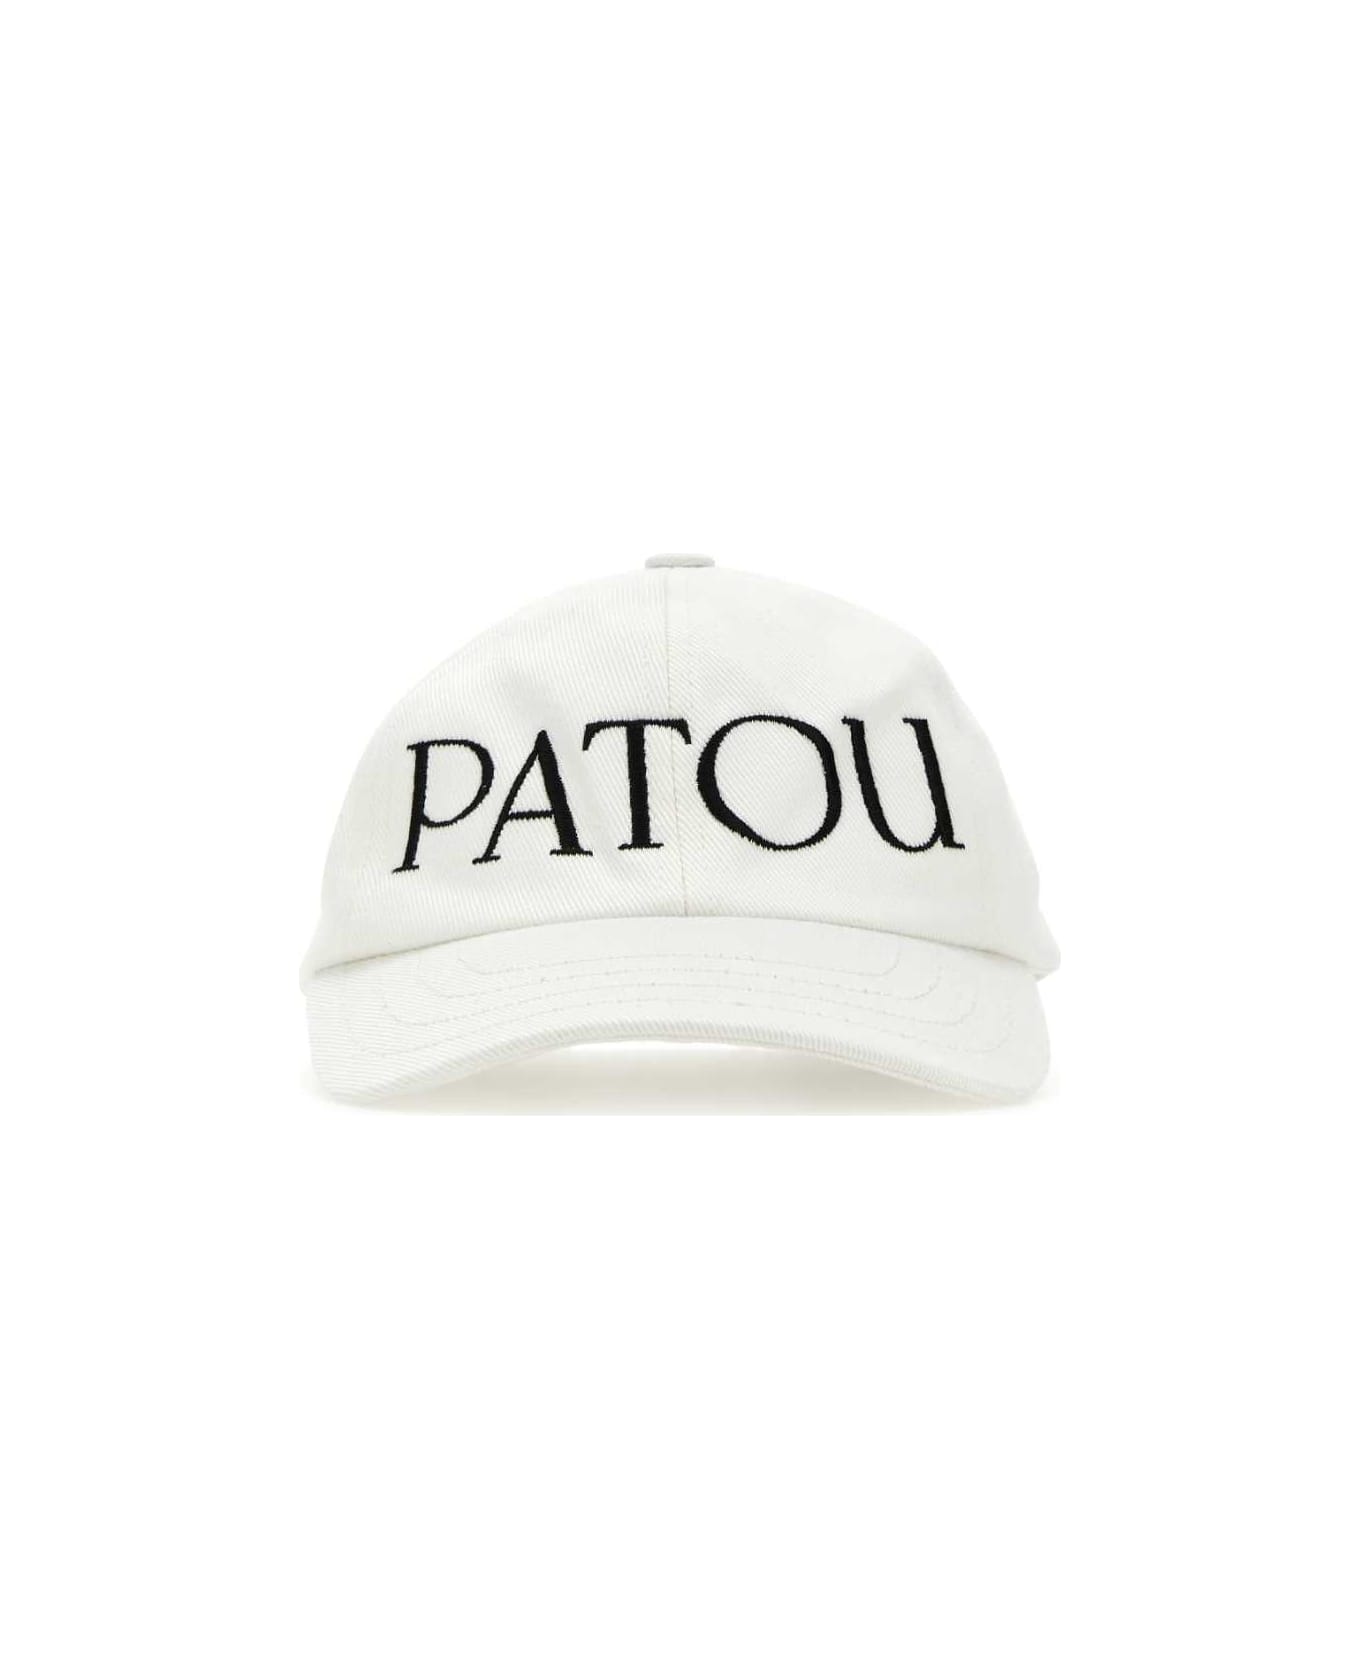 Patou White Cotton Baseball Cap - 090C